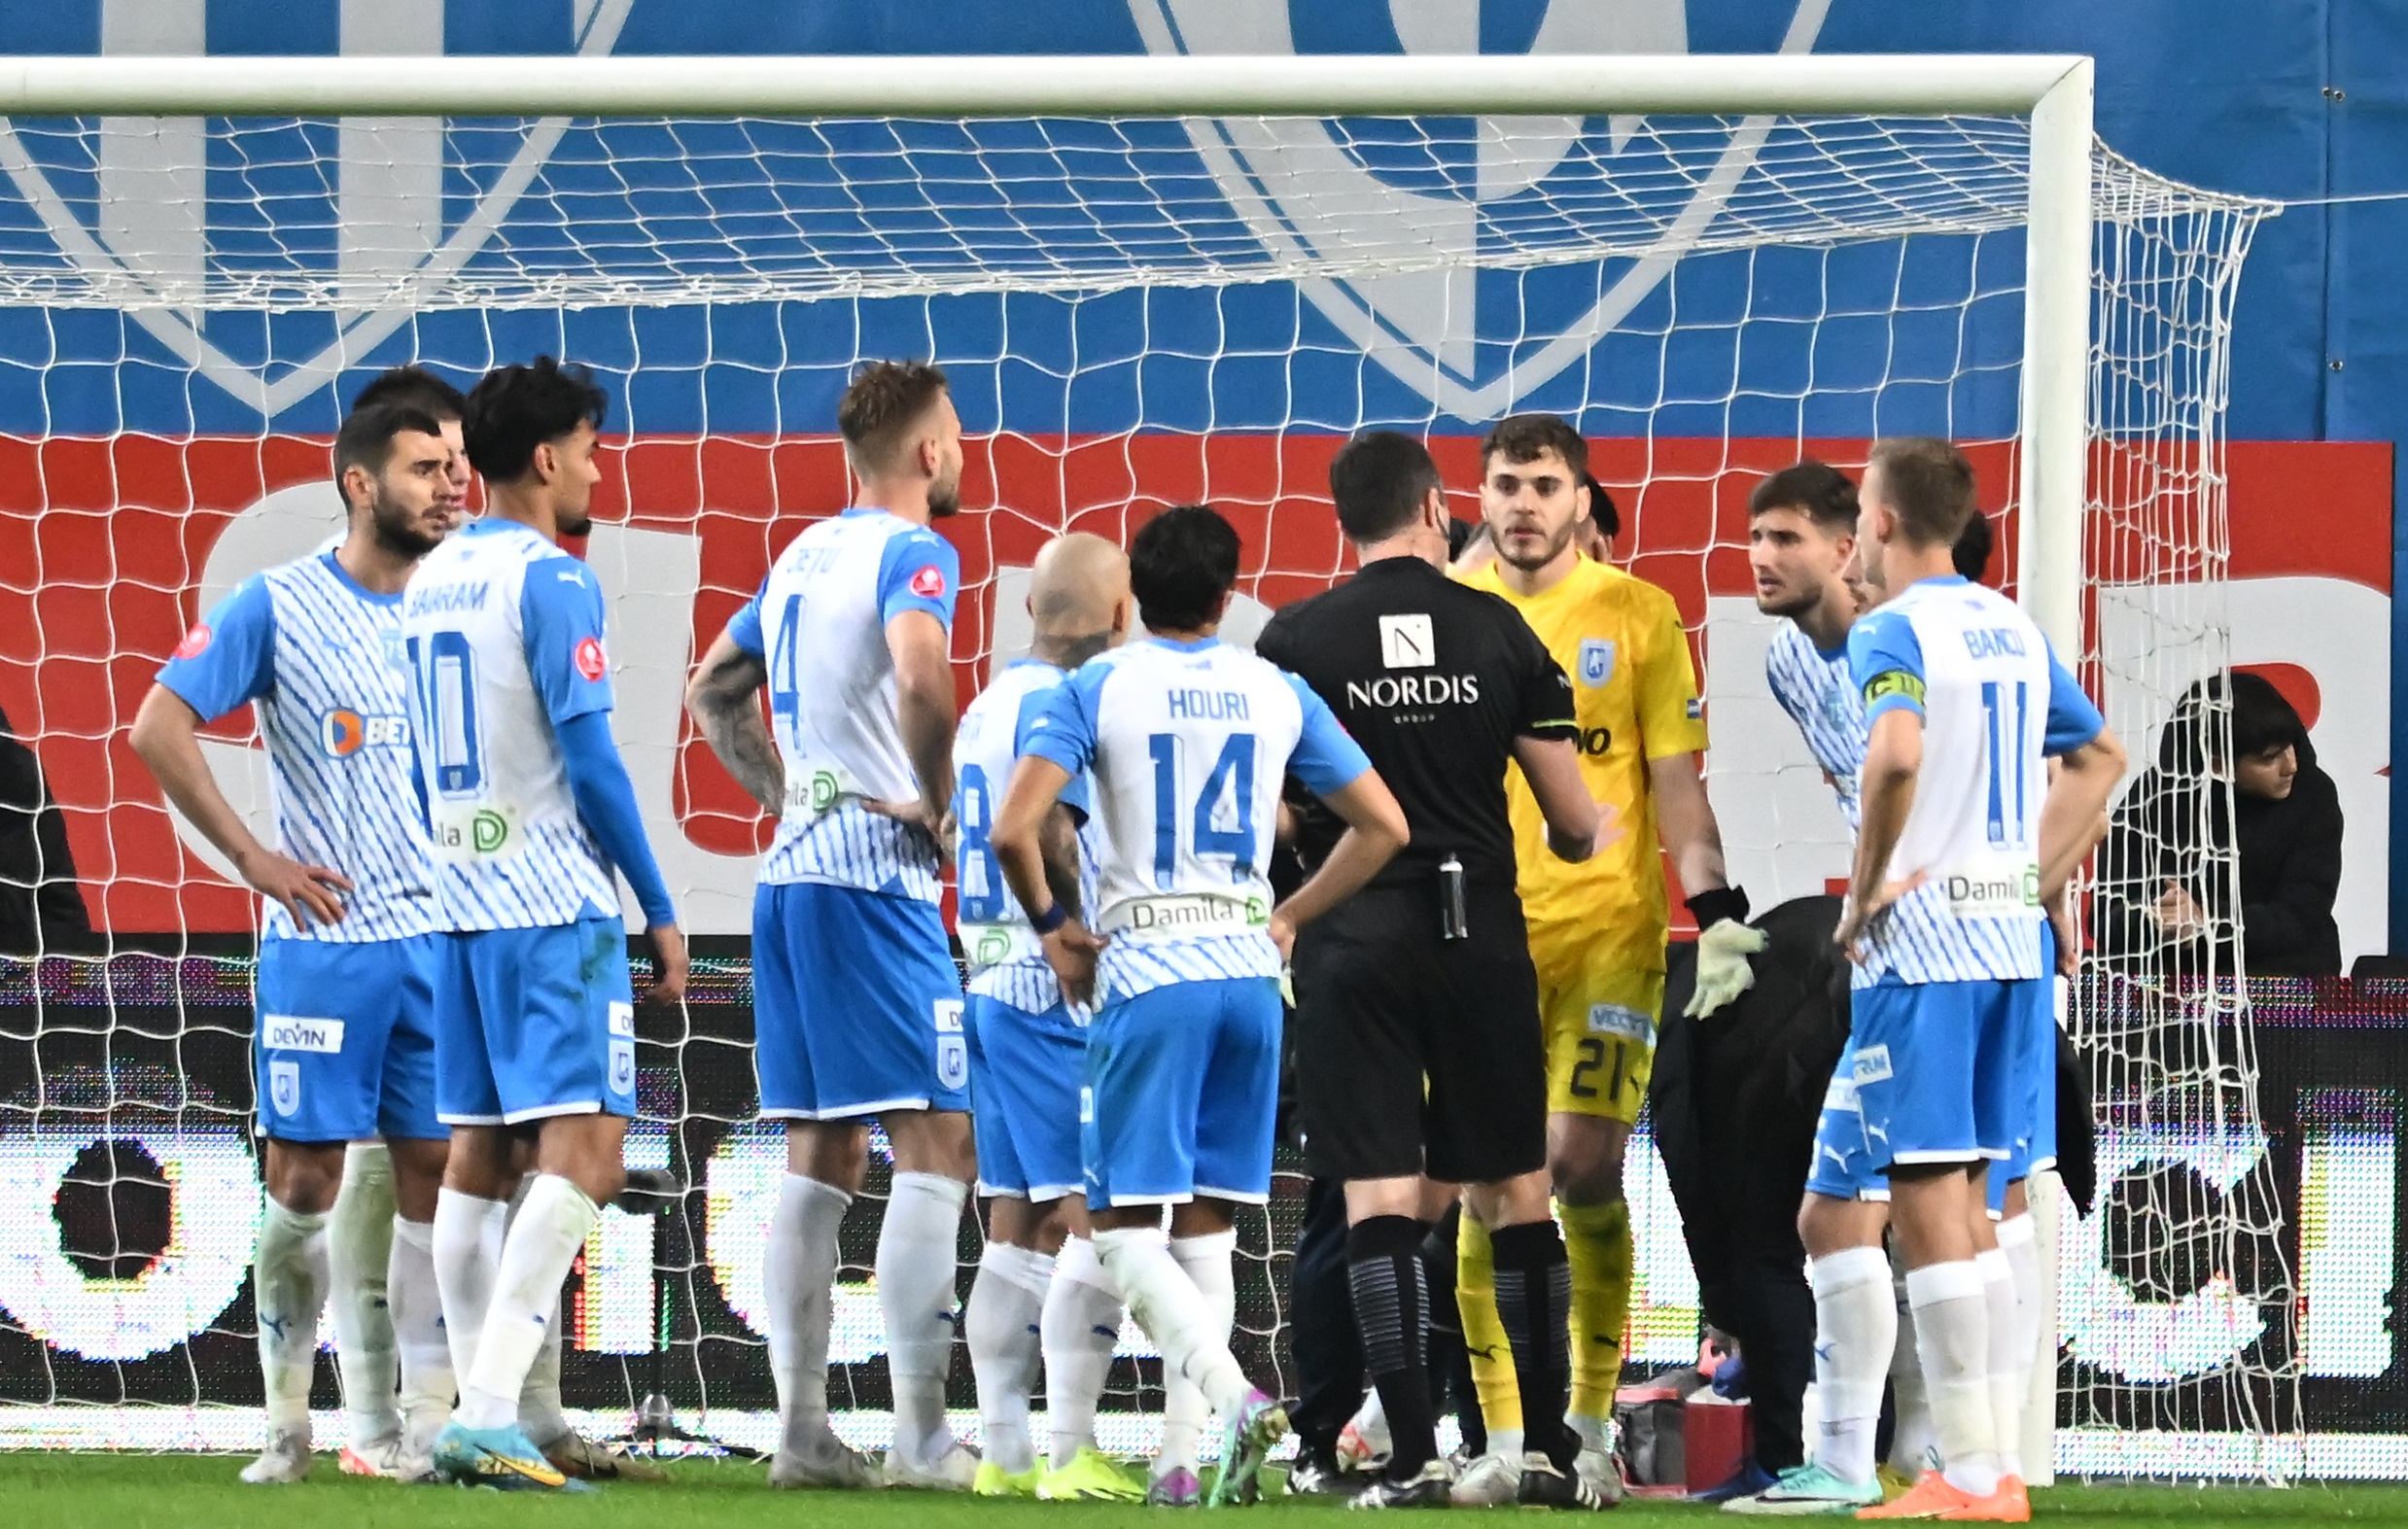 Analiza celei mai controversate faze din meciul Universitatea Craiova - FC Voluntari: ”Putea schimba complet rezultatul!”